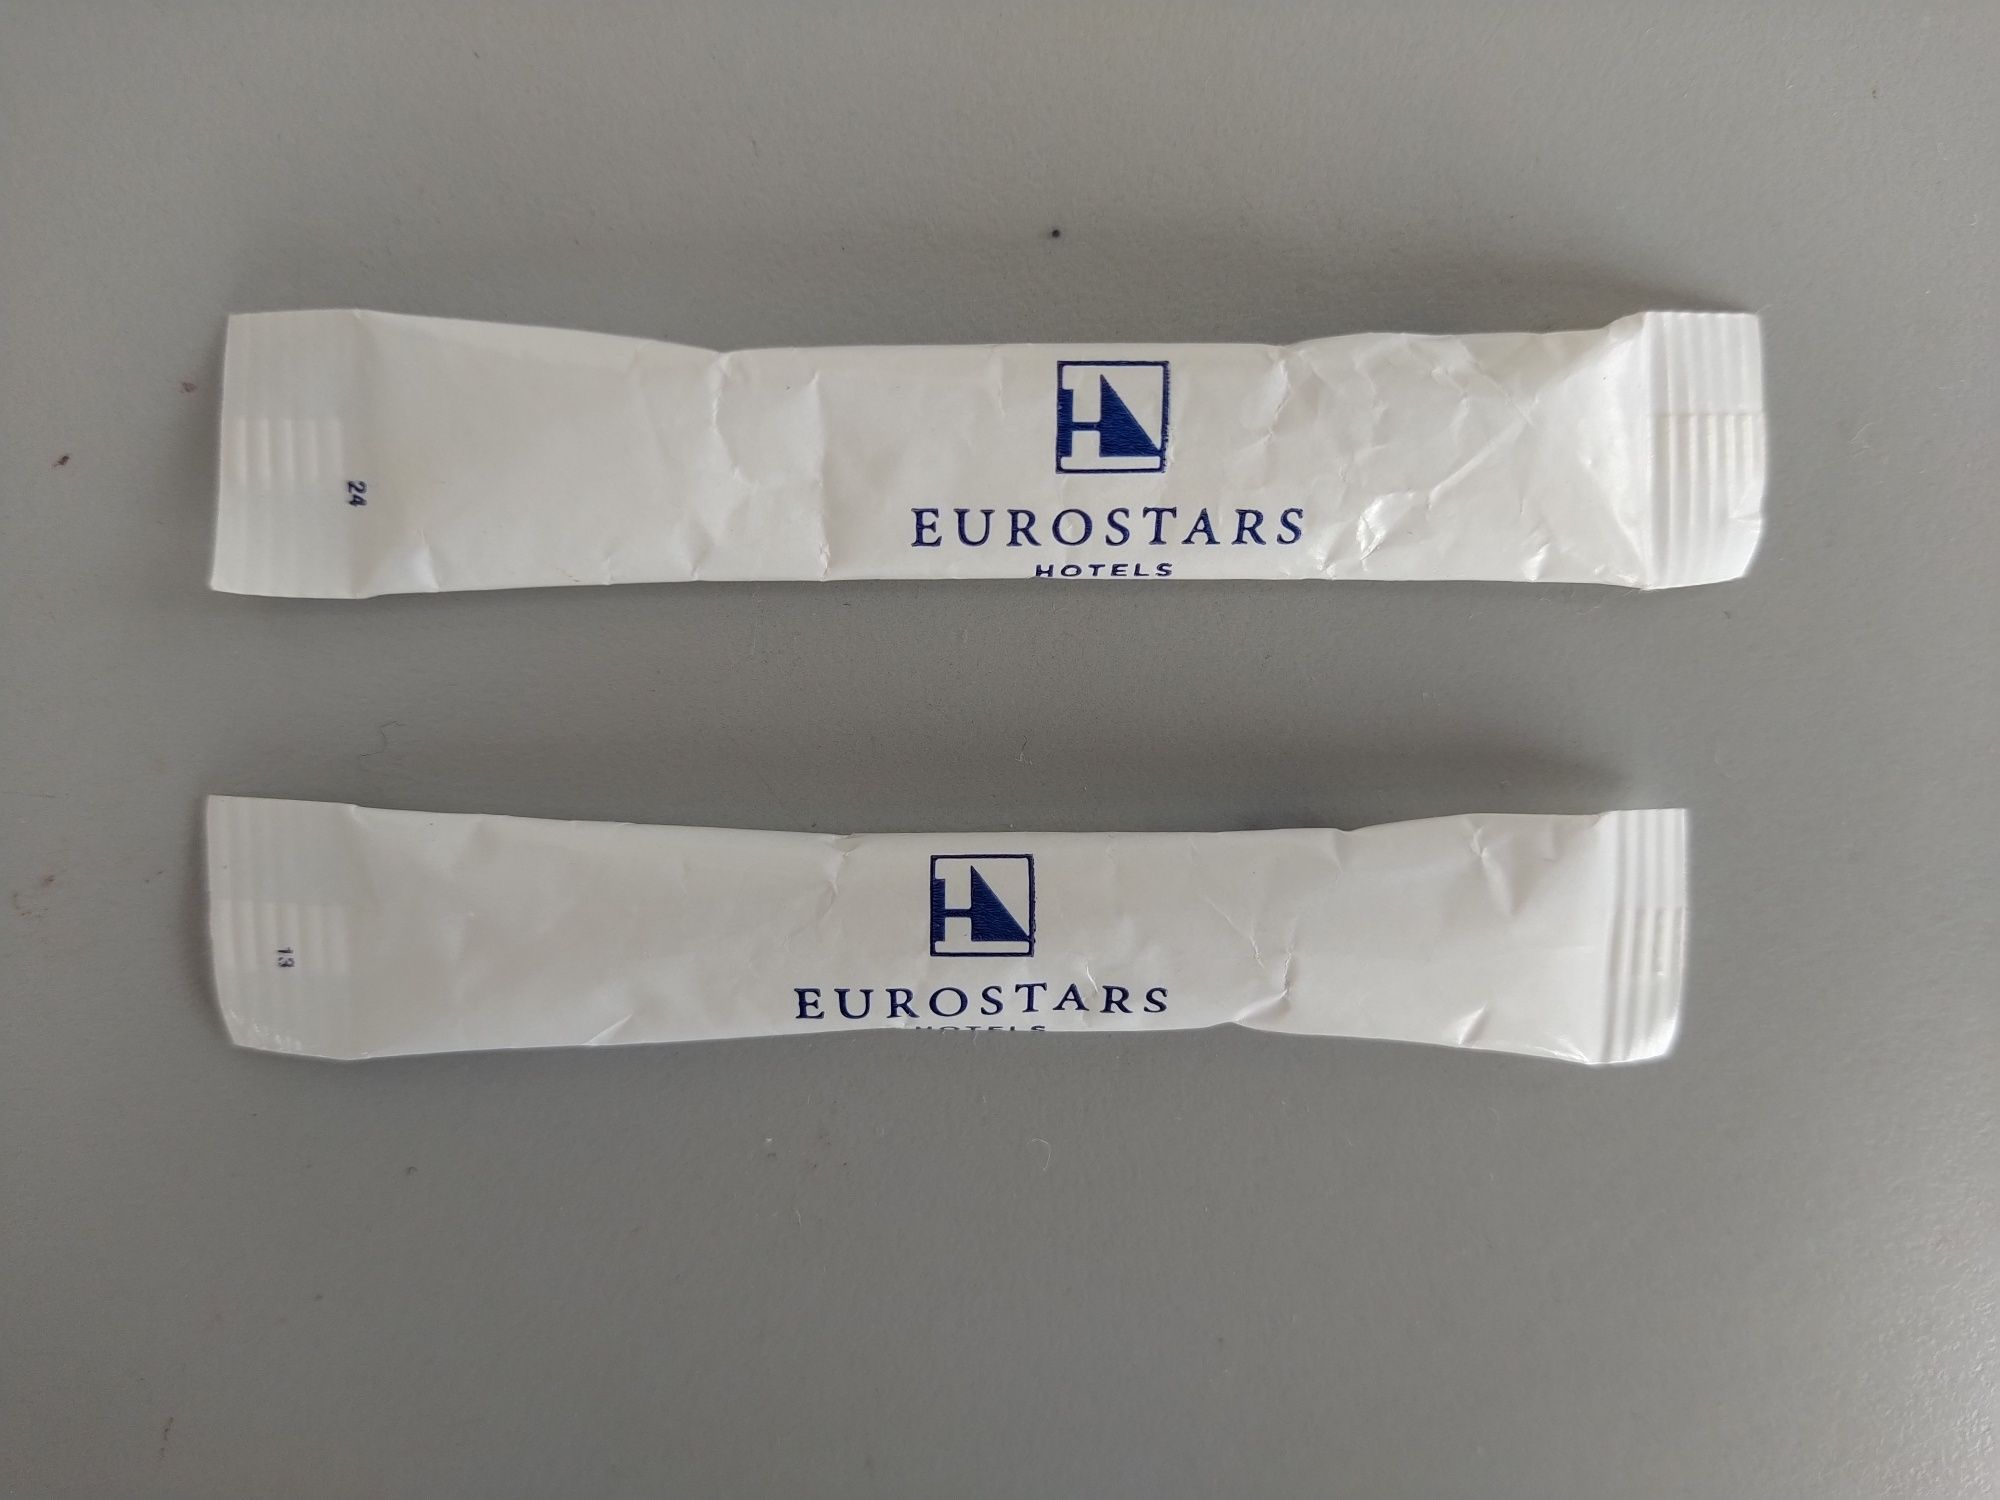 Pacotes de açúcar em sticks - Eurostars Hotels